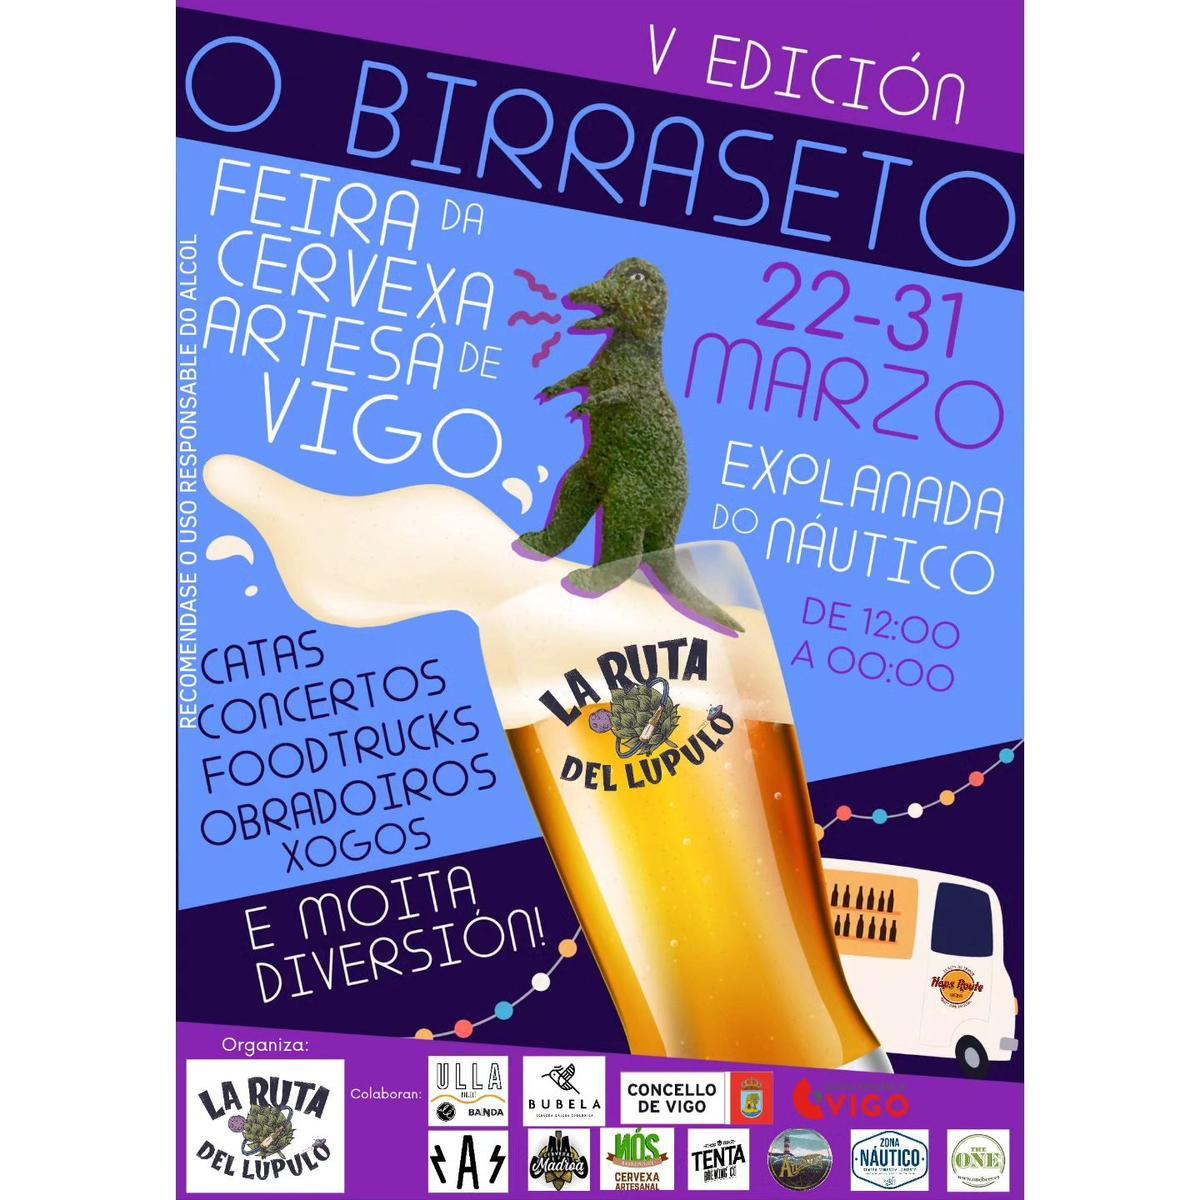 Cartel del Birraseto Fest 2024.